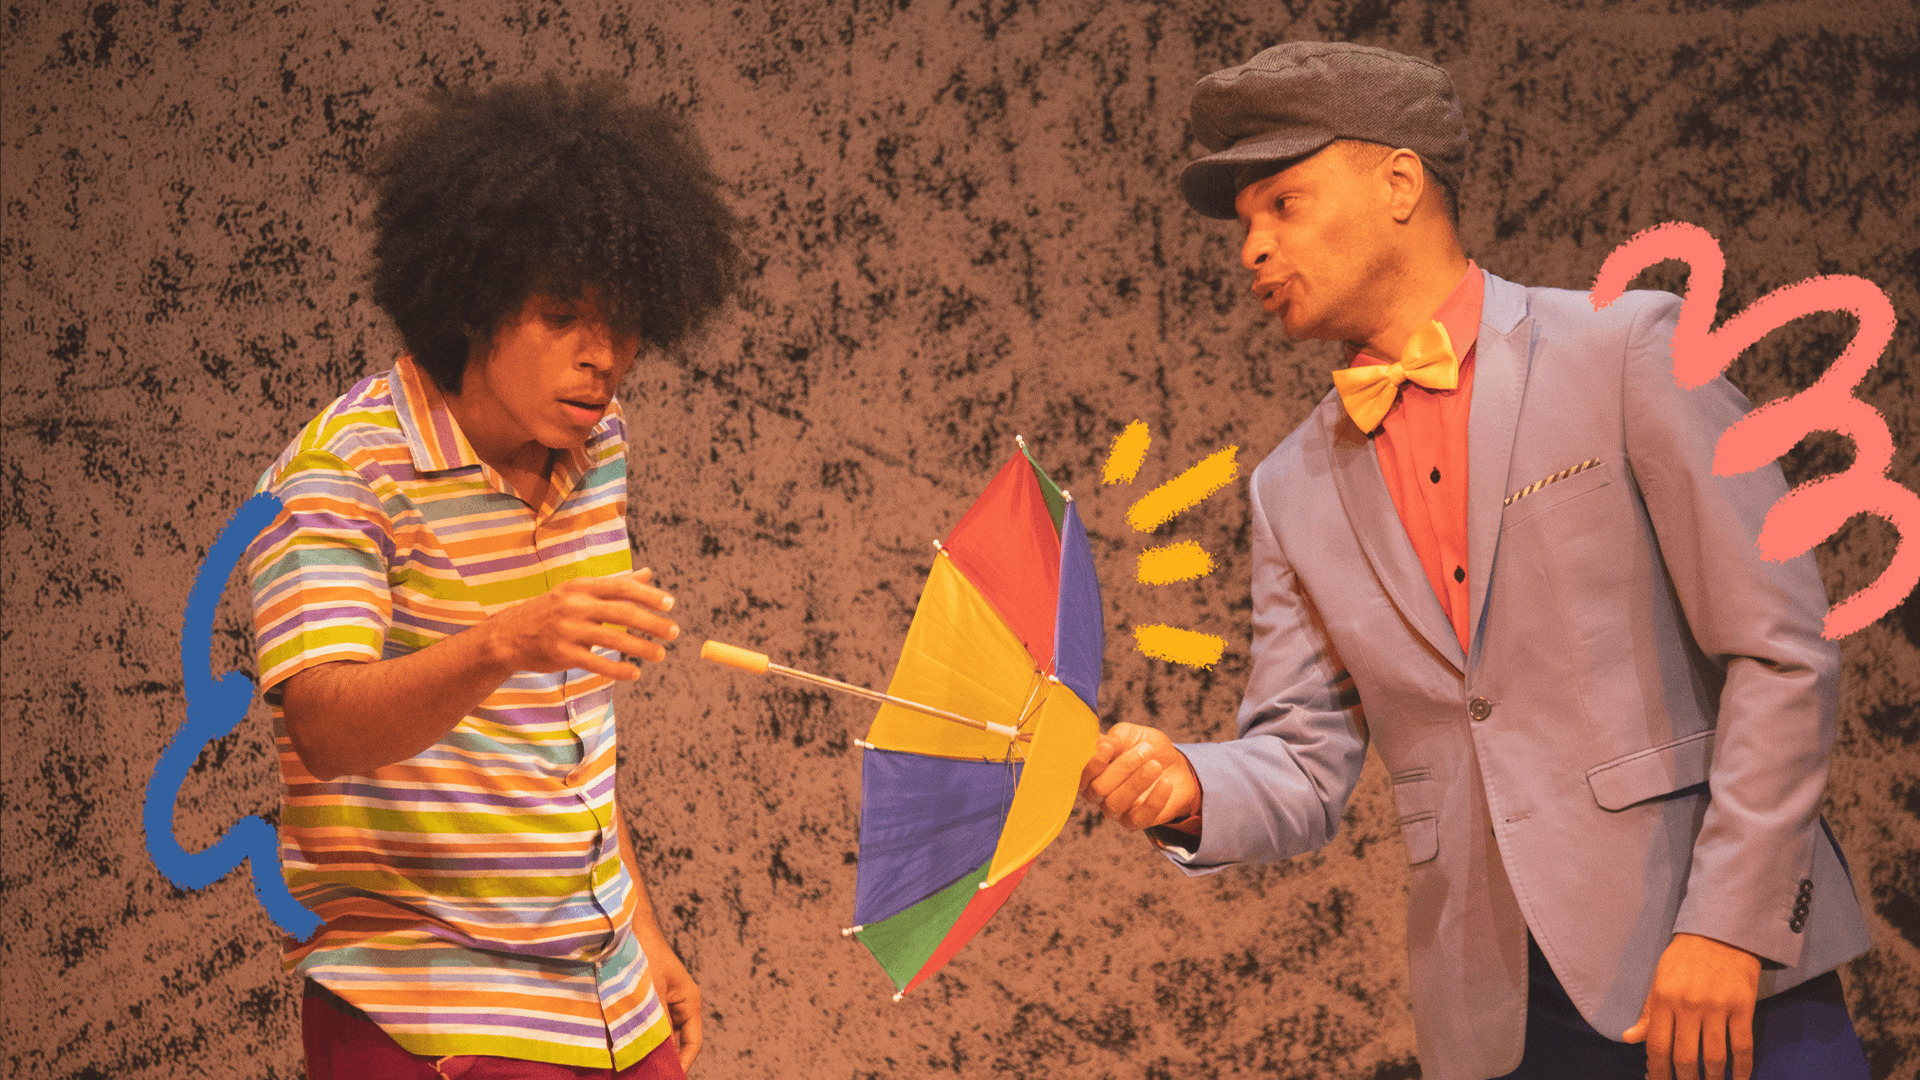 Imagem mostra cena do espetáculo musical Bento Batuca, em que um ator negro de camisa listrada segura um guarda-chuva colorido de frevo, equanto outro ator negro usa chapéu, terno e gravata borboleta.